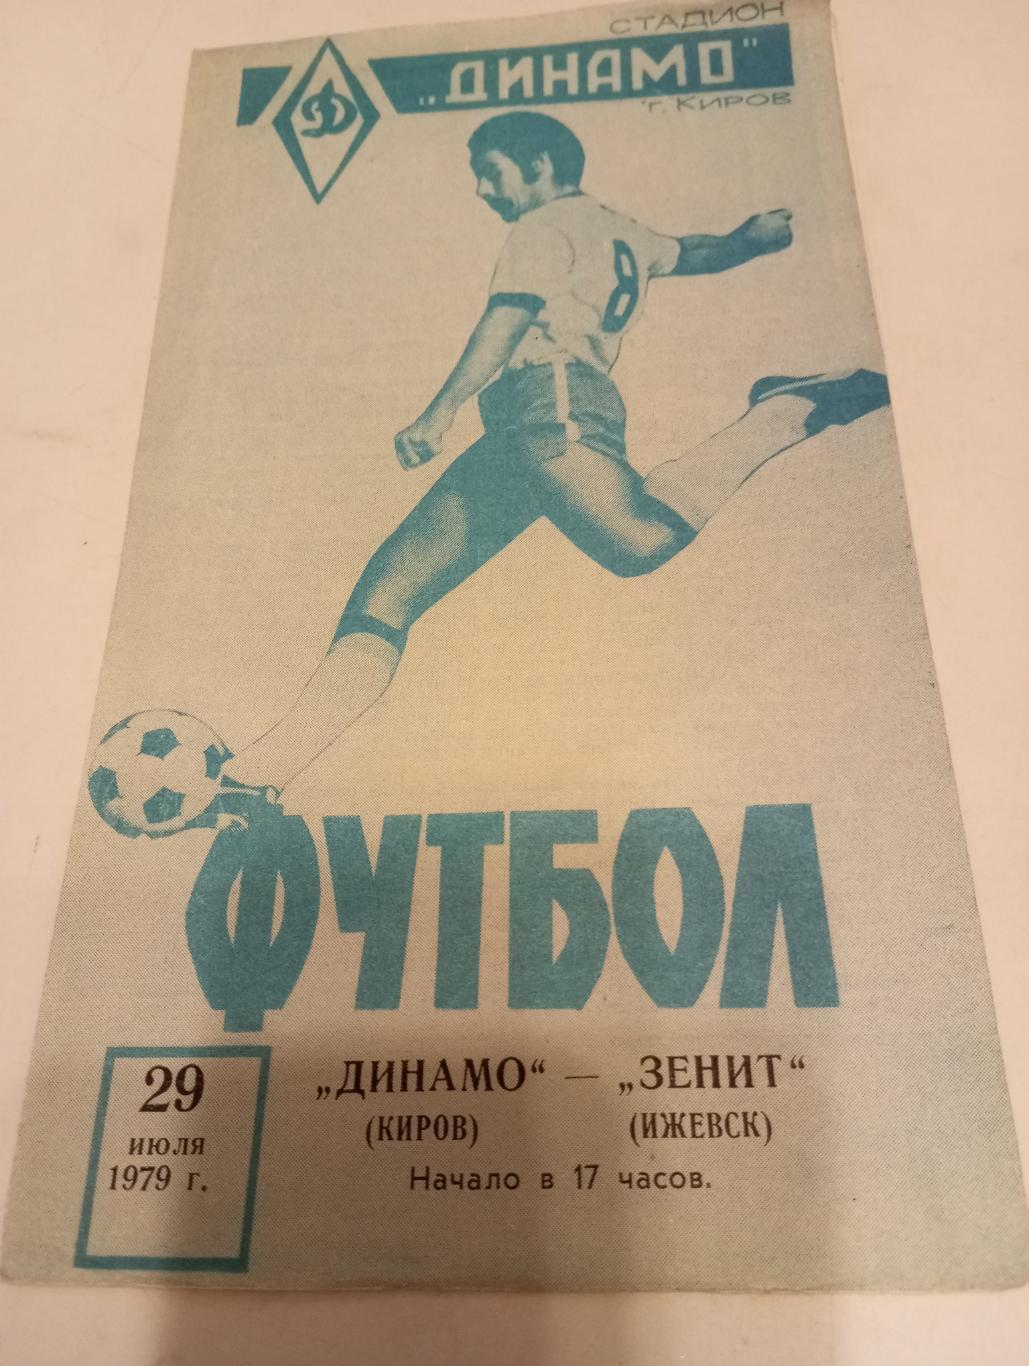 Динамо (Киров) - Зенит (Ижевск). 29.07.1979.